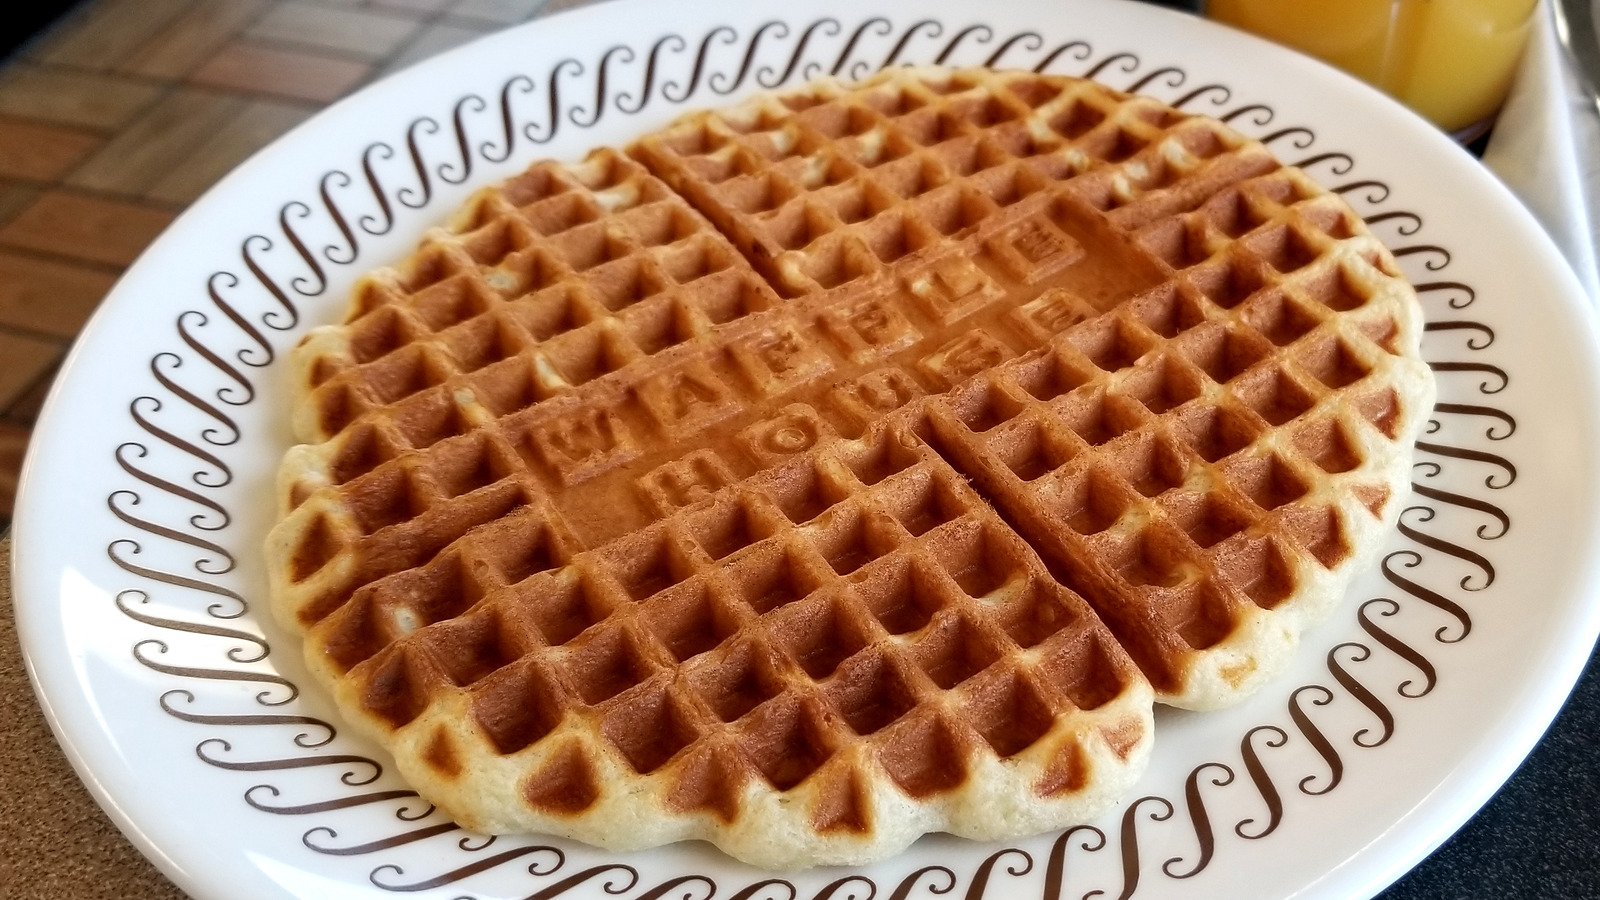 waffle house 5 menu 2018